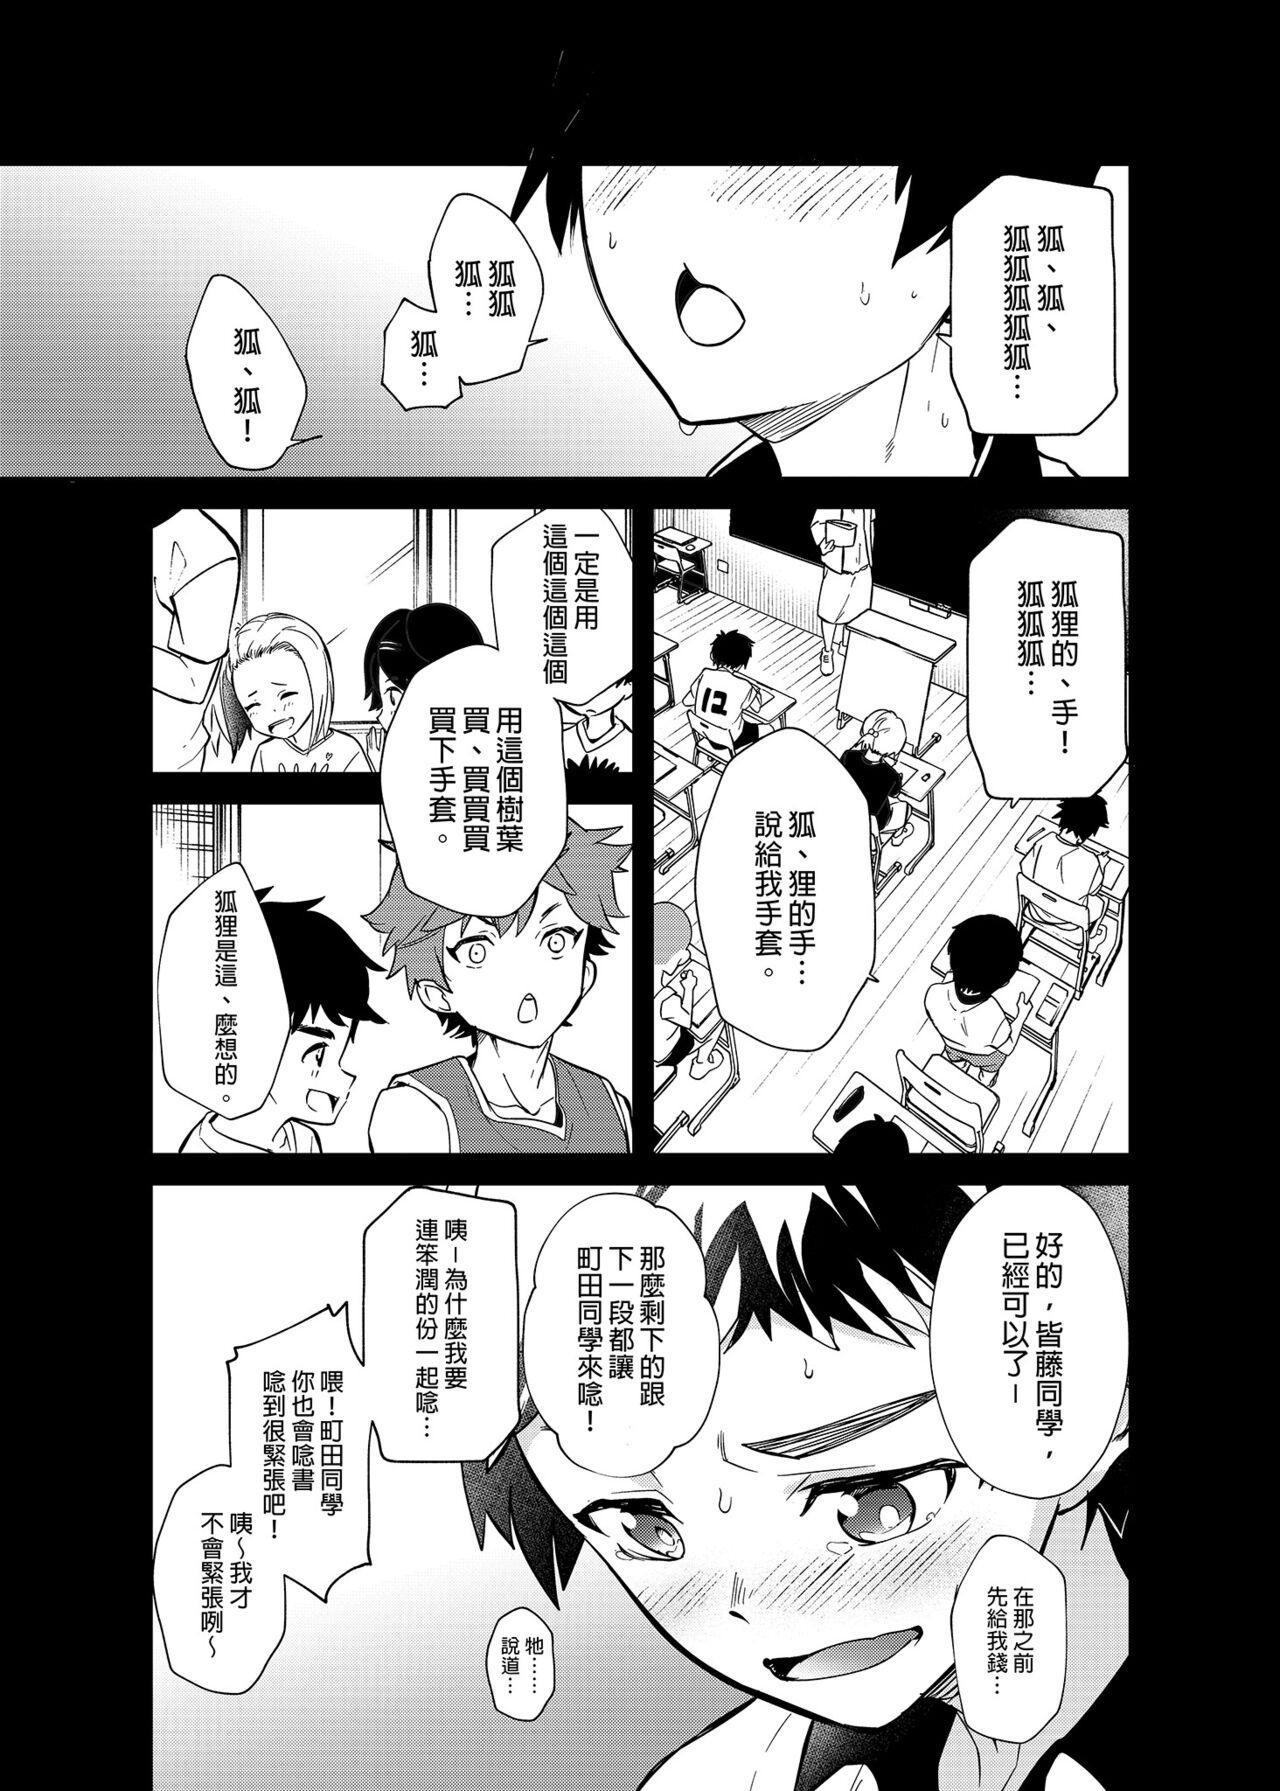 Gozada Kiritsu,ki o tsuke, rei! | 起立、注意、敬禮! - Original And - Page 8